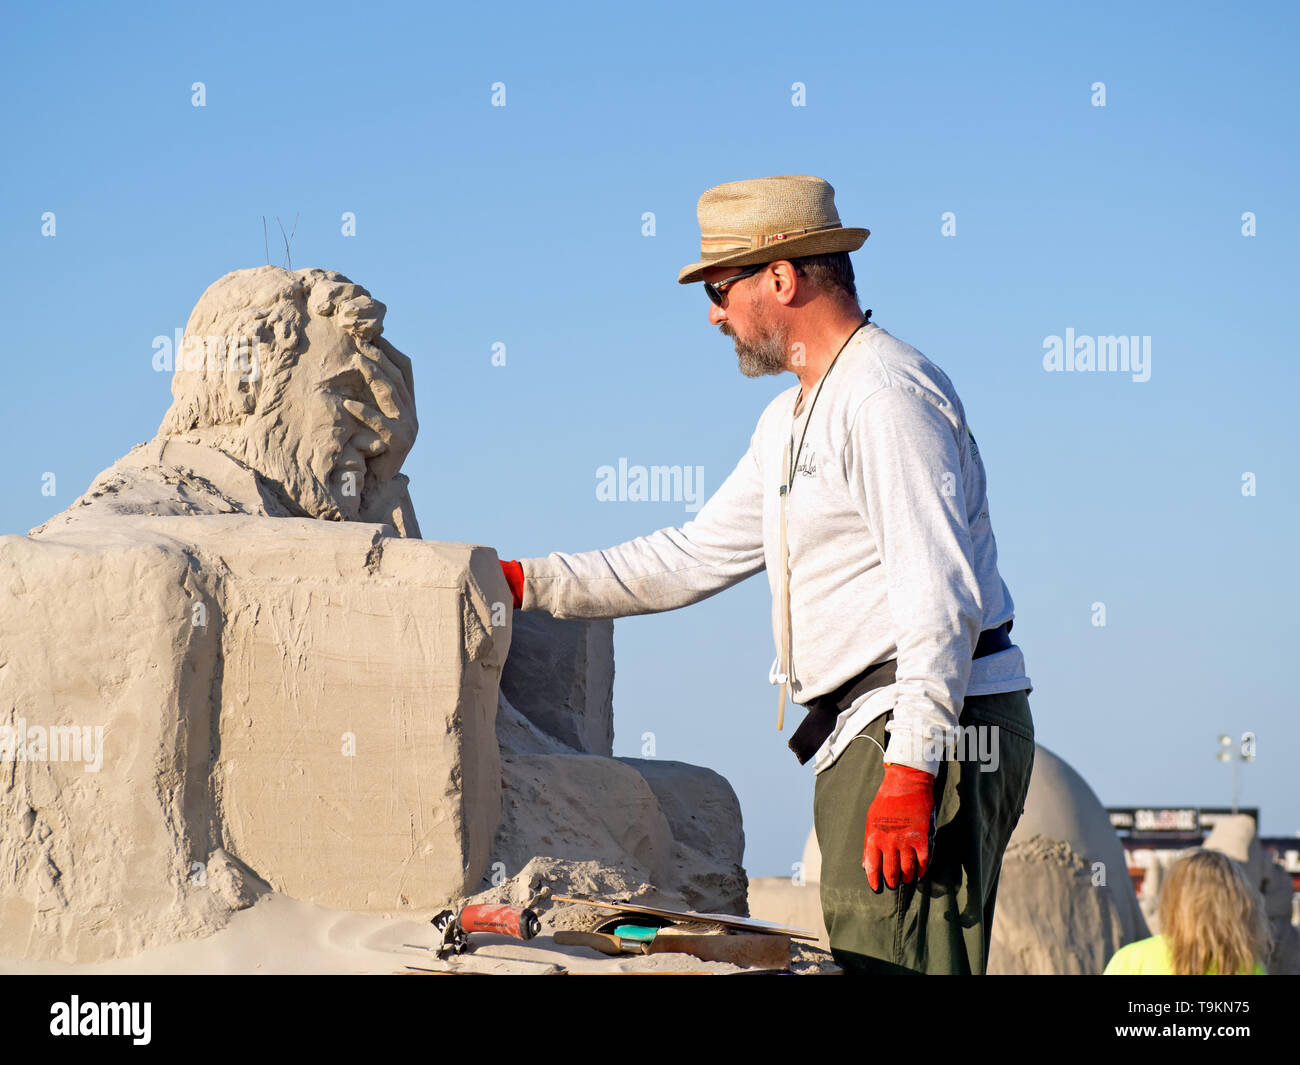 Damon Langlois de Victoria, Colombie-Britannique, Canada travaille sur sa 1re place, sculptures de sable 'Liberty' Sandfest en ruine. Texas 2019. Banque D'Images